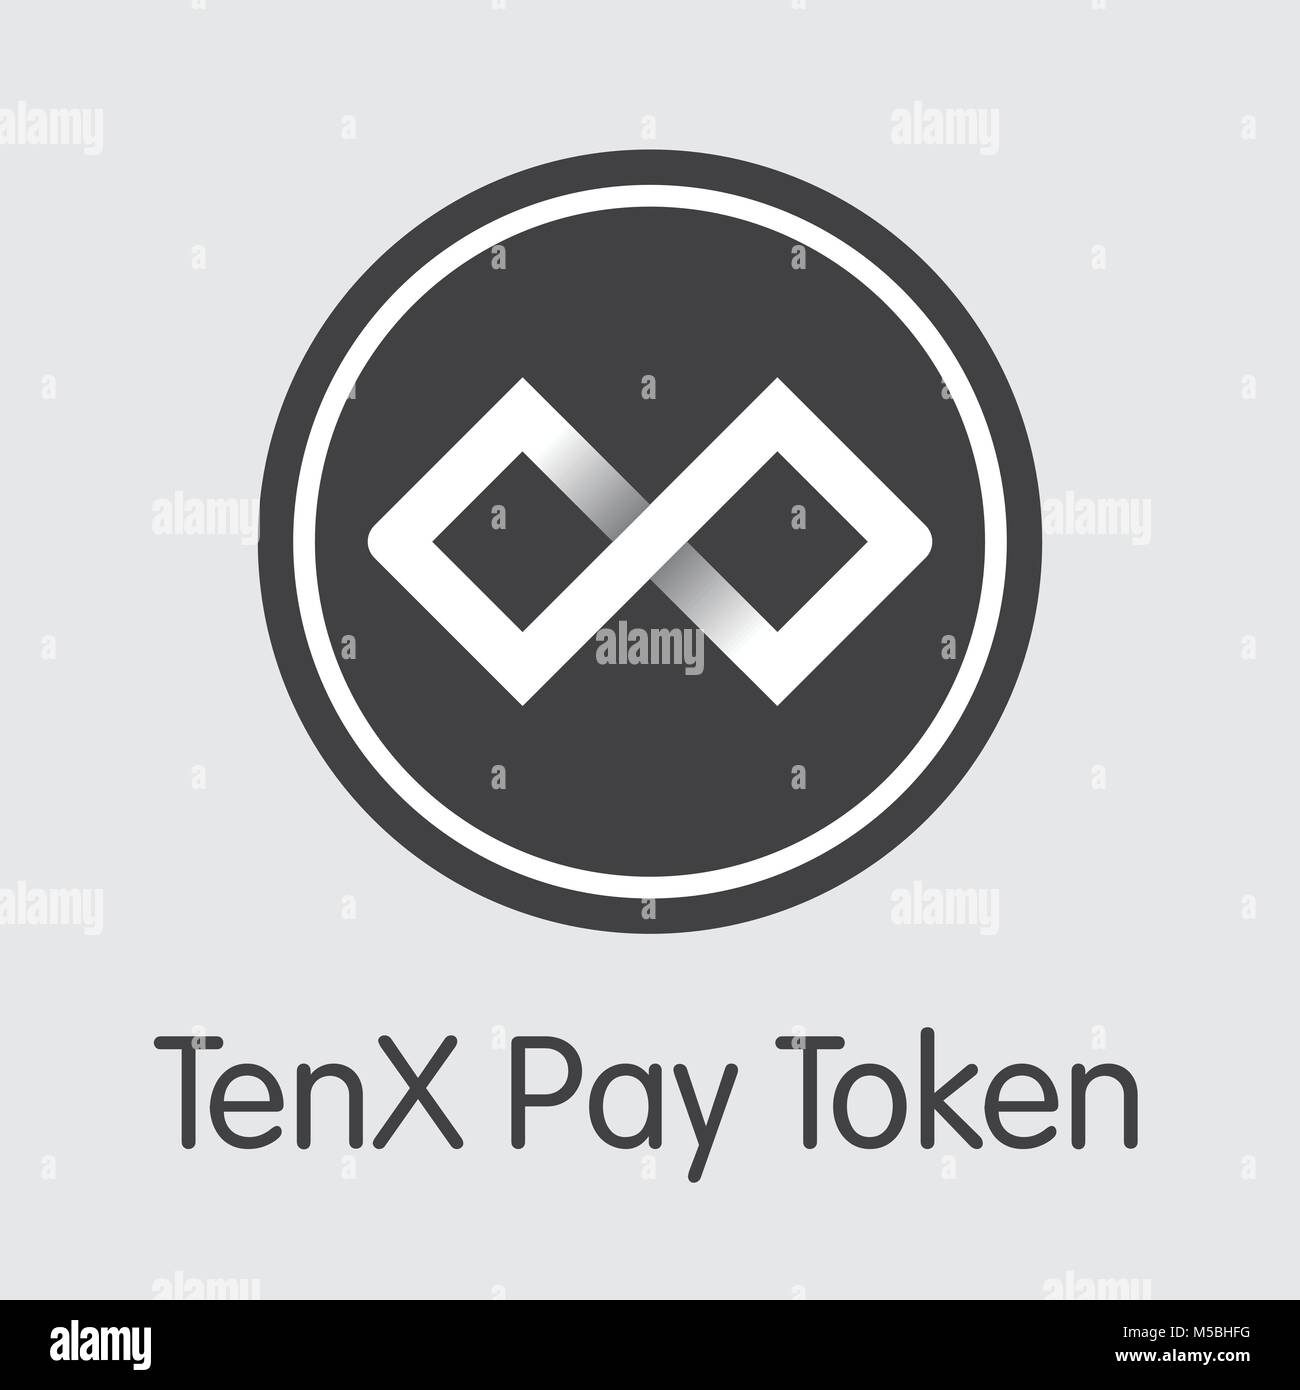 Tenx Pay Token Cryptocurrency - Vector Coin Image. Stock Vector